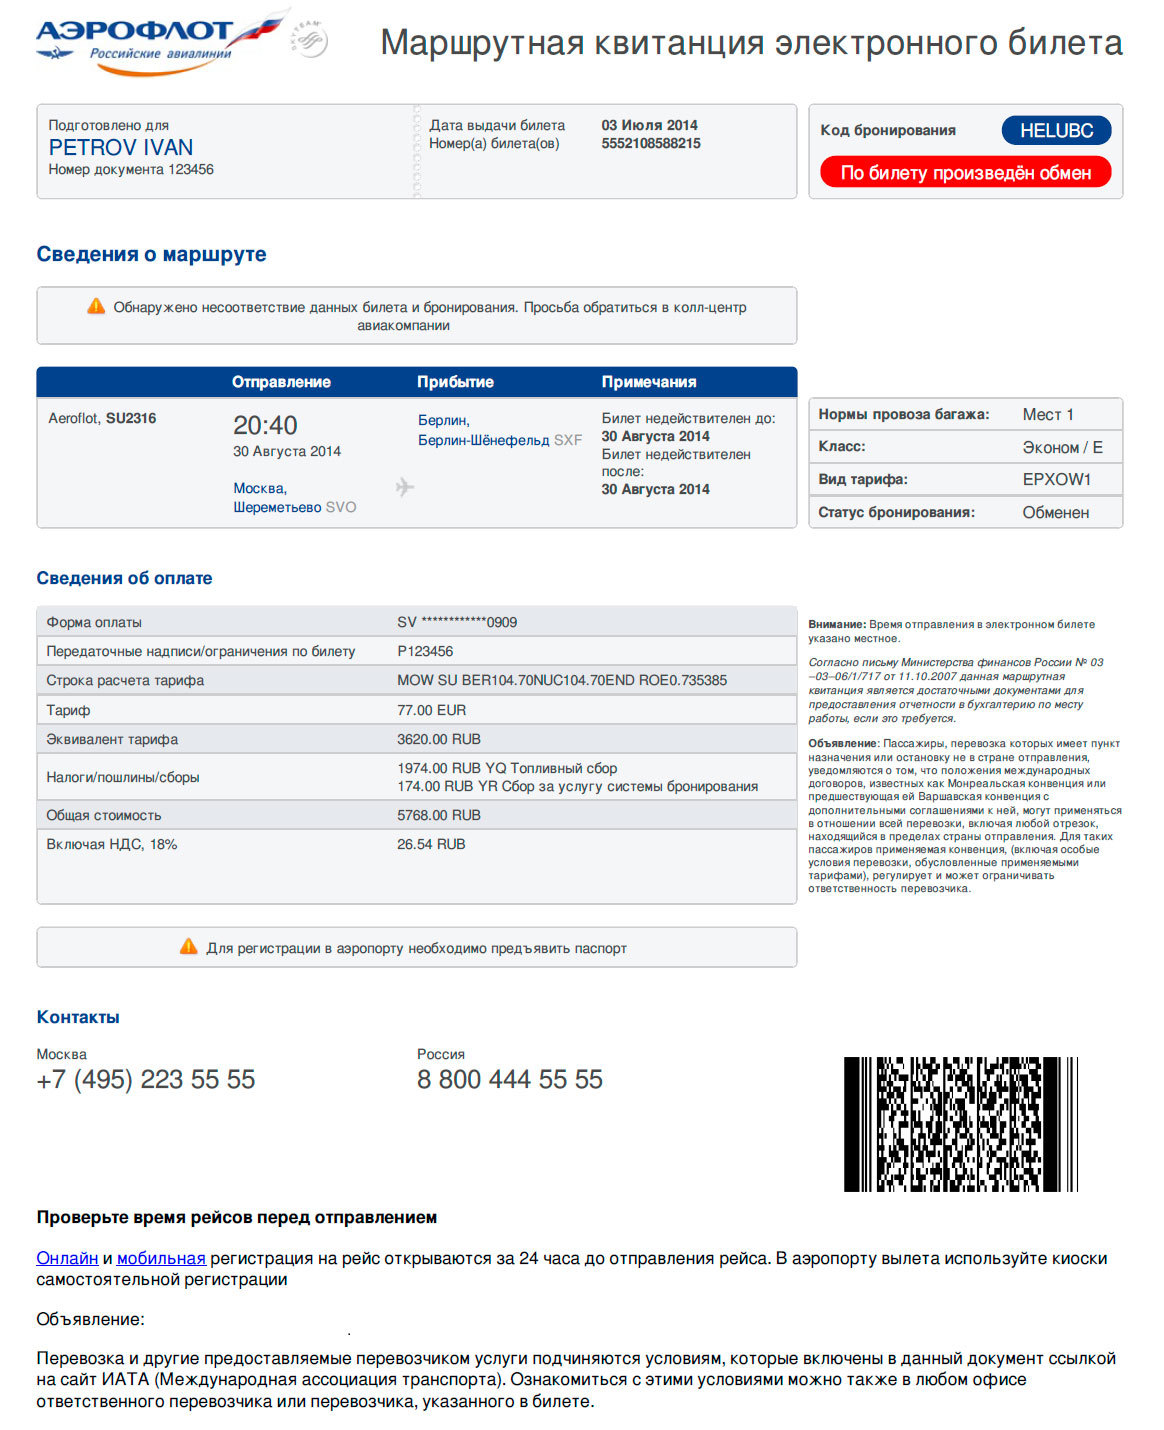 Рассчитать дату покупки билетов. Как выглядит электронный билет на самолет. Как выглядит маршрутная квитанция электронного билета на самолет. Как выглядит распечатка электронного билета на самолет. Маршрутная квитанция электронного билета Аэрофлот 2022.